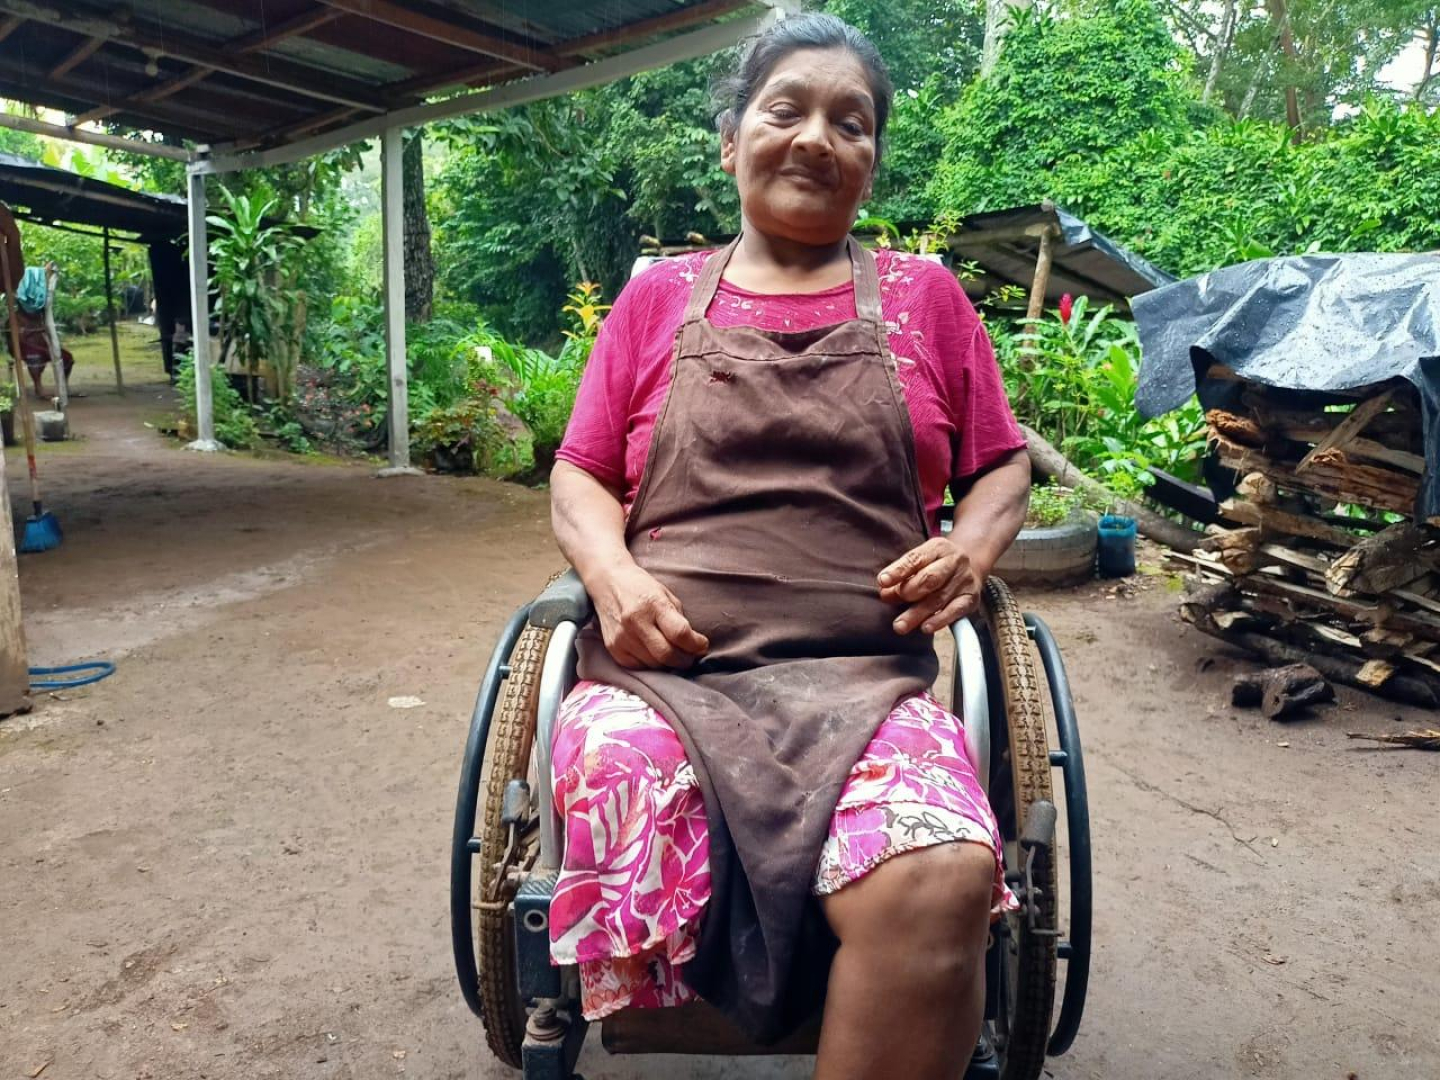 Las personas con discapacidad tienen pocas oportunidades laborales.